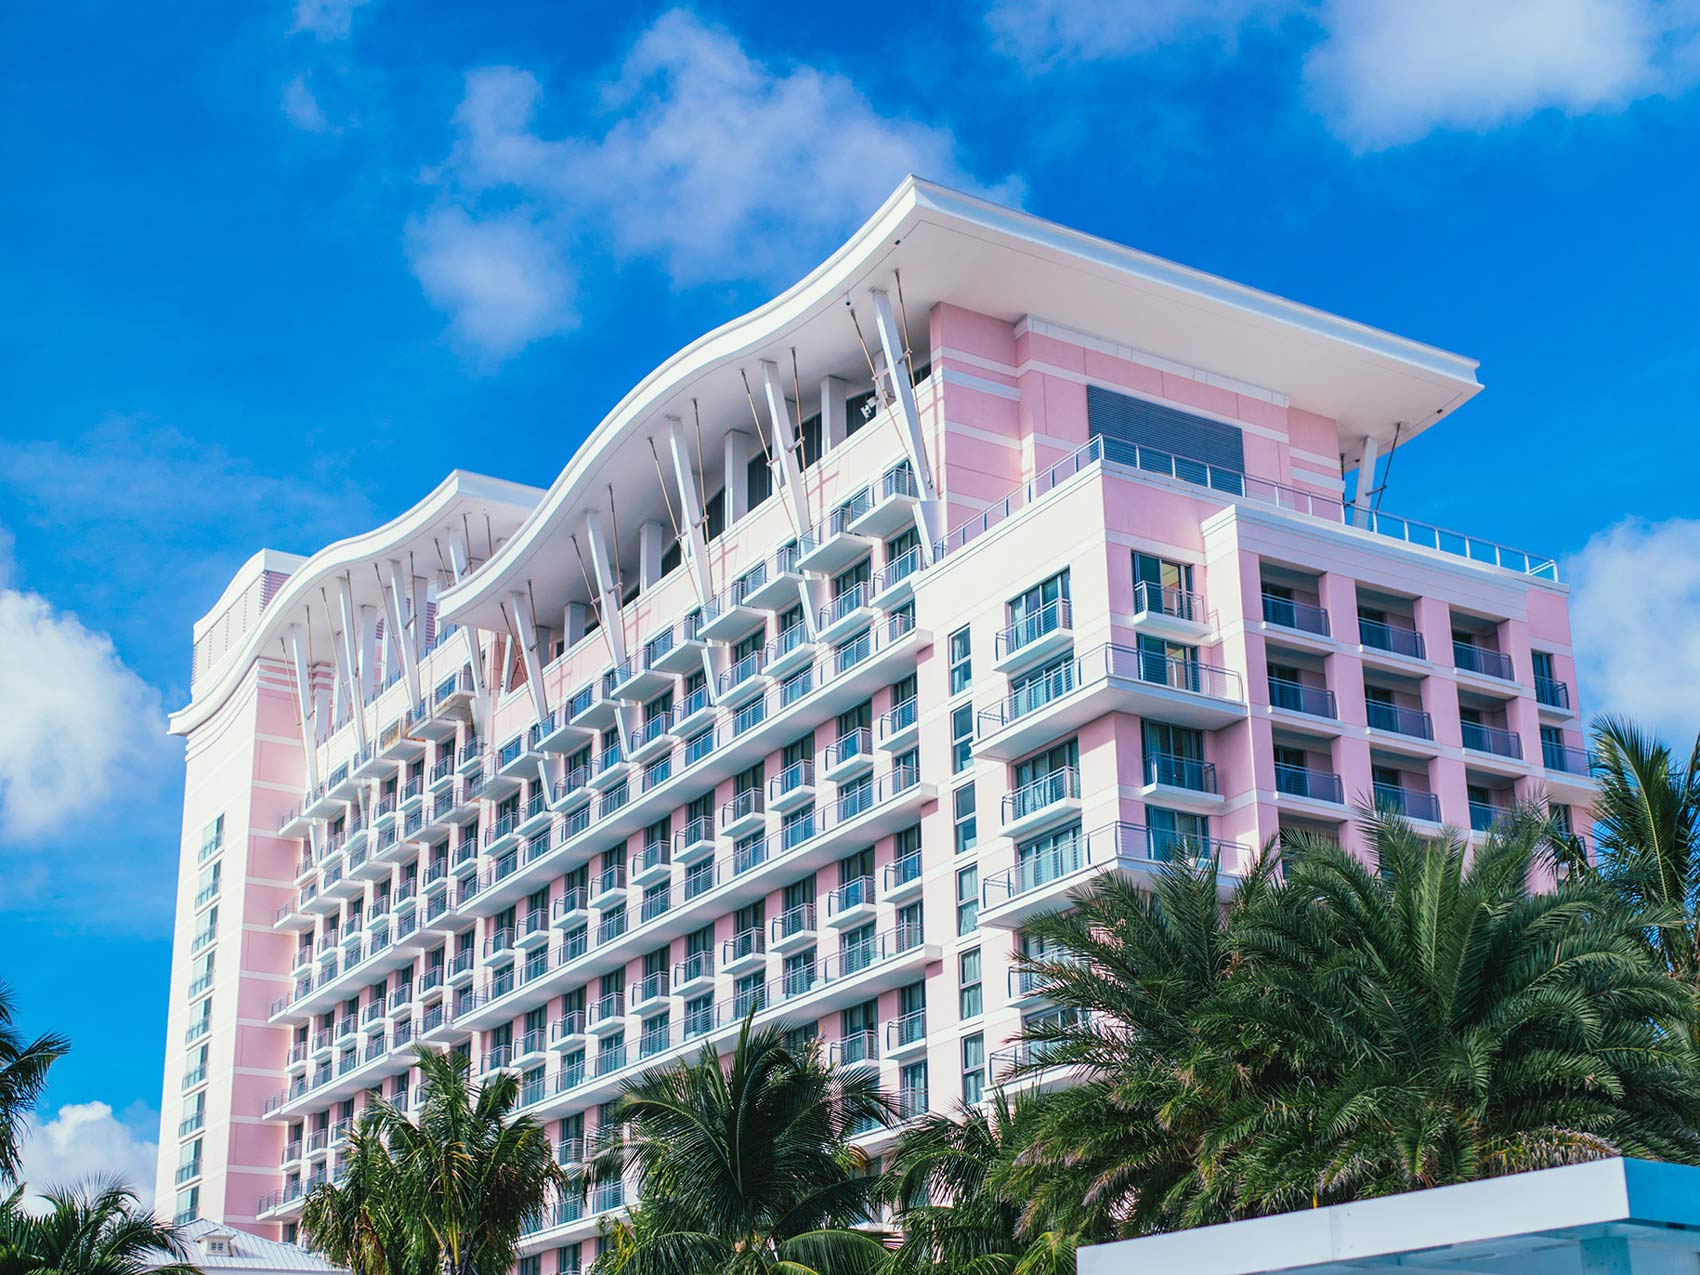 Exterior do edifício cor-de-rosa do Hotel SLS Baha Mar, com o céu azul em segundo plano.